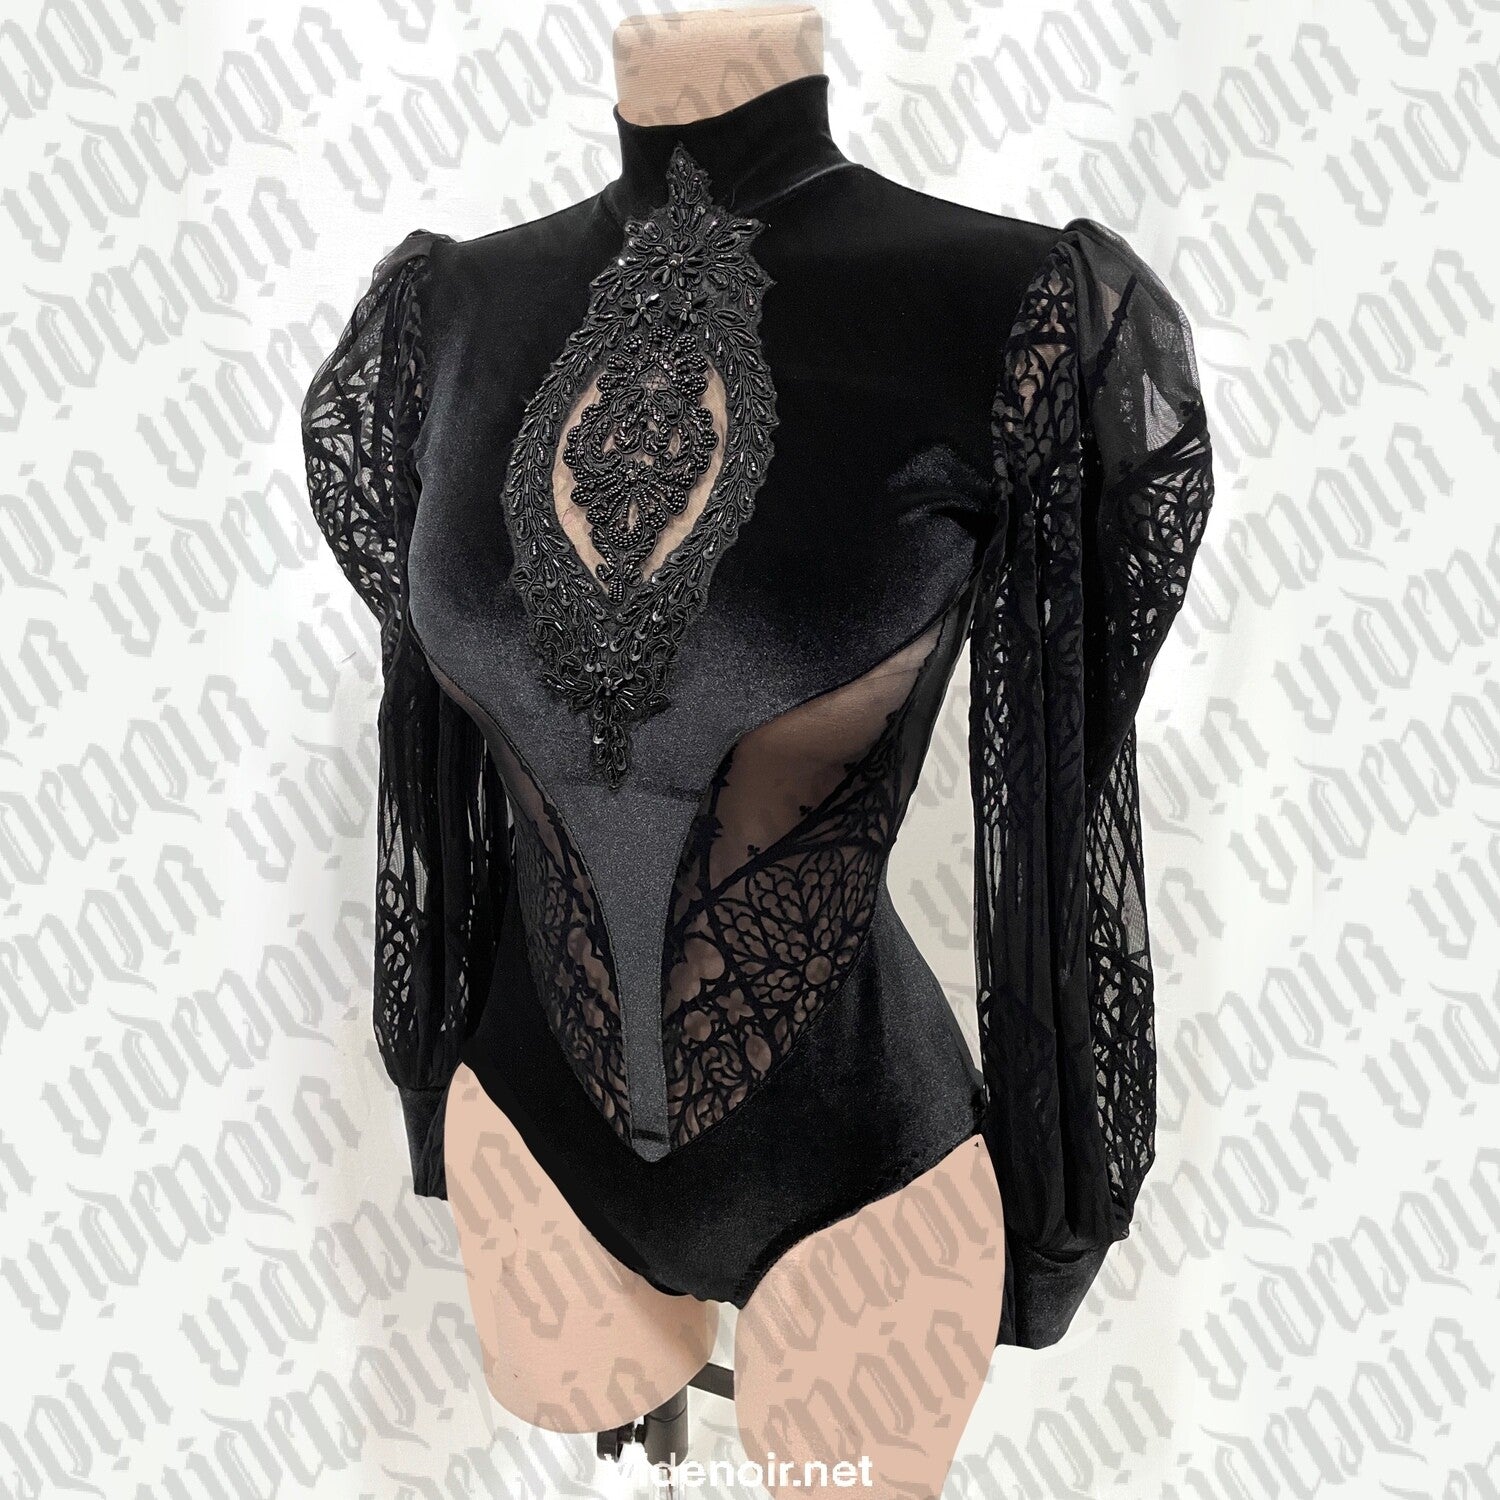 Bodysuit Lady Lace, Lace Body, Gothic Bodysuit, Gothic Clothing